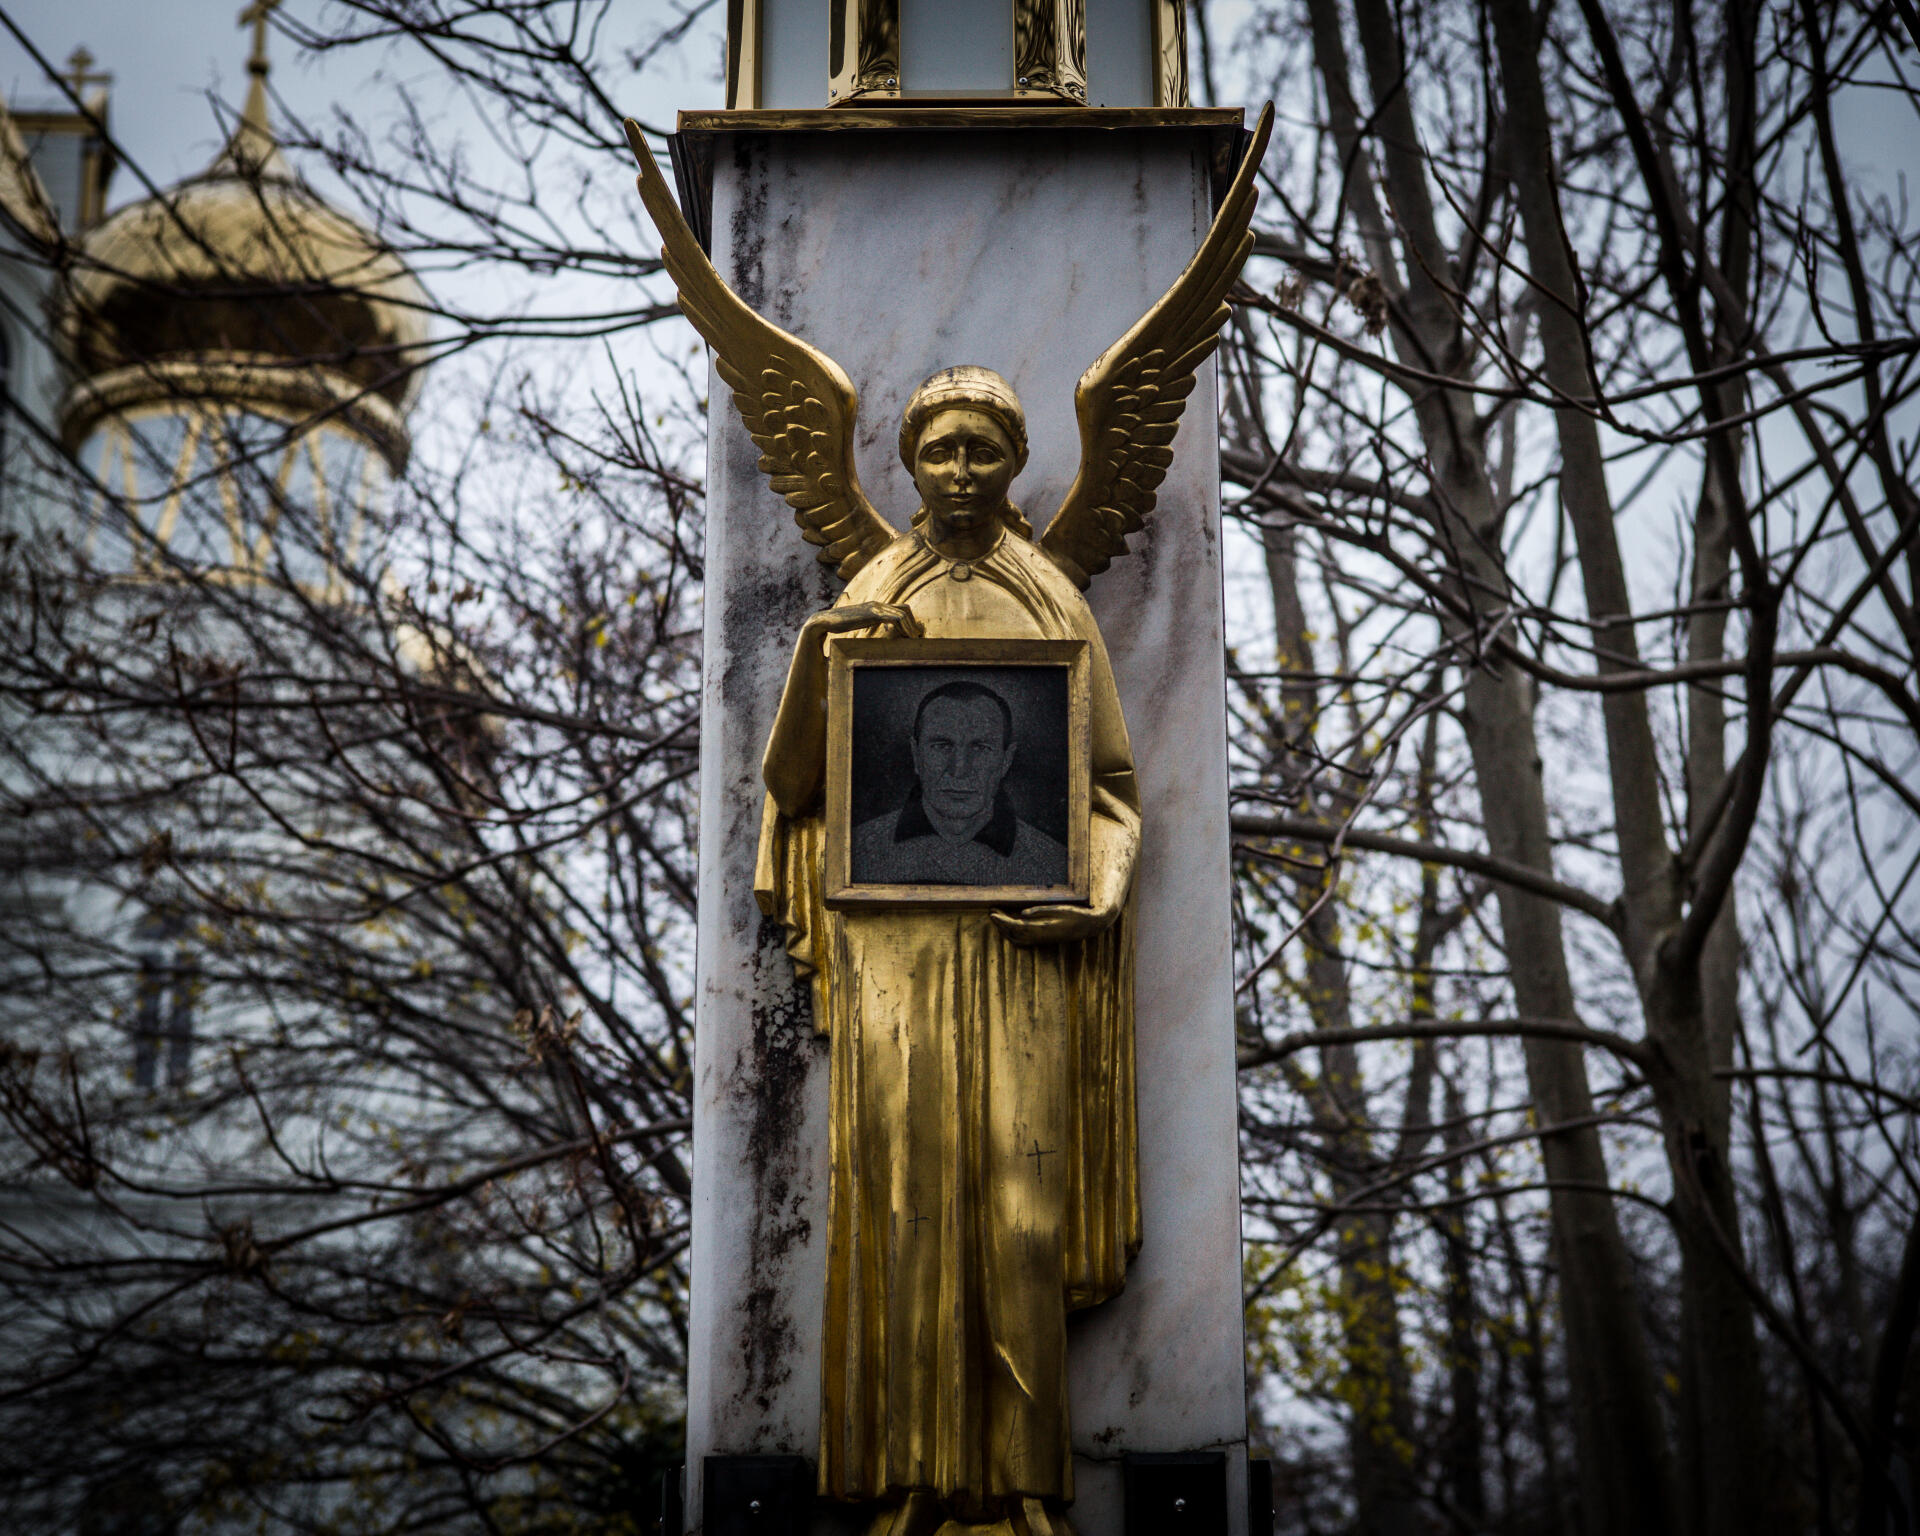 La tombe de Kulivar Viktor, connu sous le nom “Karabas”, à Odessa (Ukraine), le 30 novembre 2022. Il était l’un des criminels les plus puissant de la ville, et a été assassiné en 1997 à l’âge de 49 ans dans une ruelle de la ville.